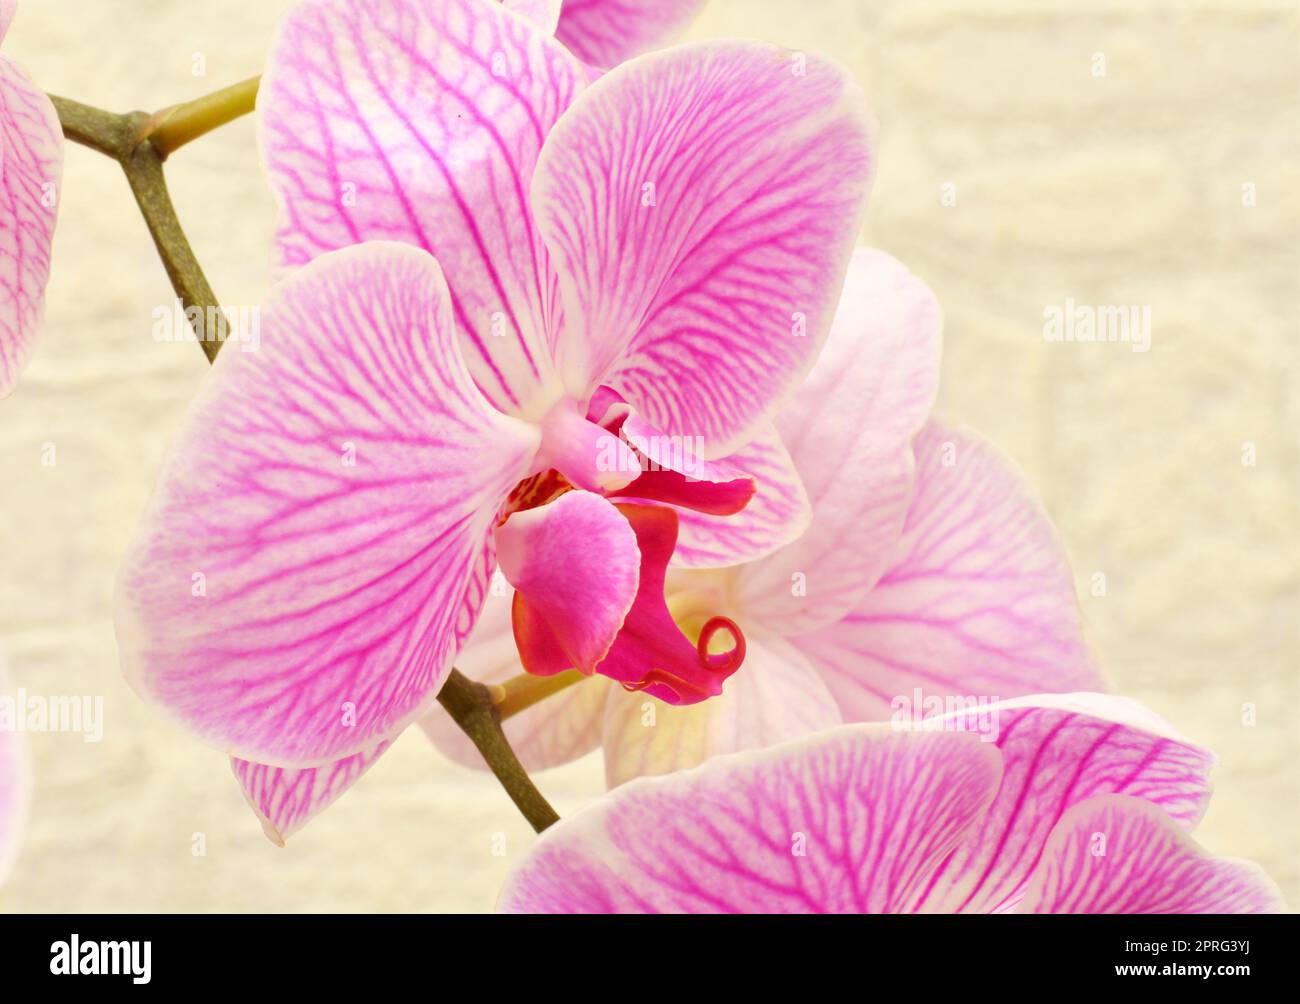 Phalaenopsis-Blüte (Latein. Phalaenopsis) oder Orchidee (Latein. Orchidaceae) von weiß-violetter Farbe Stockfoto